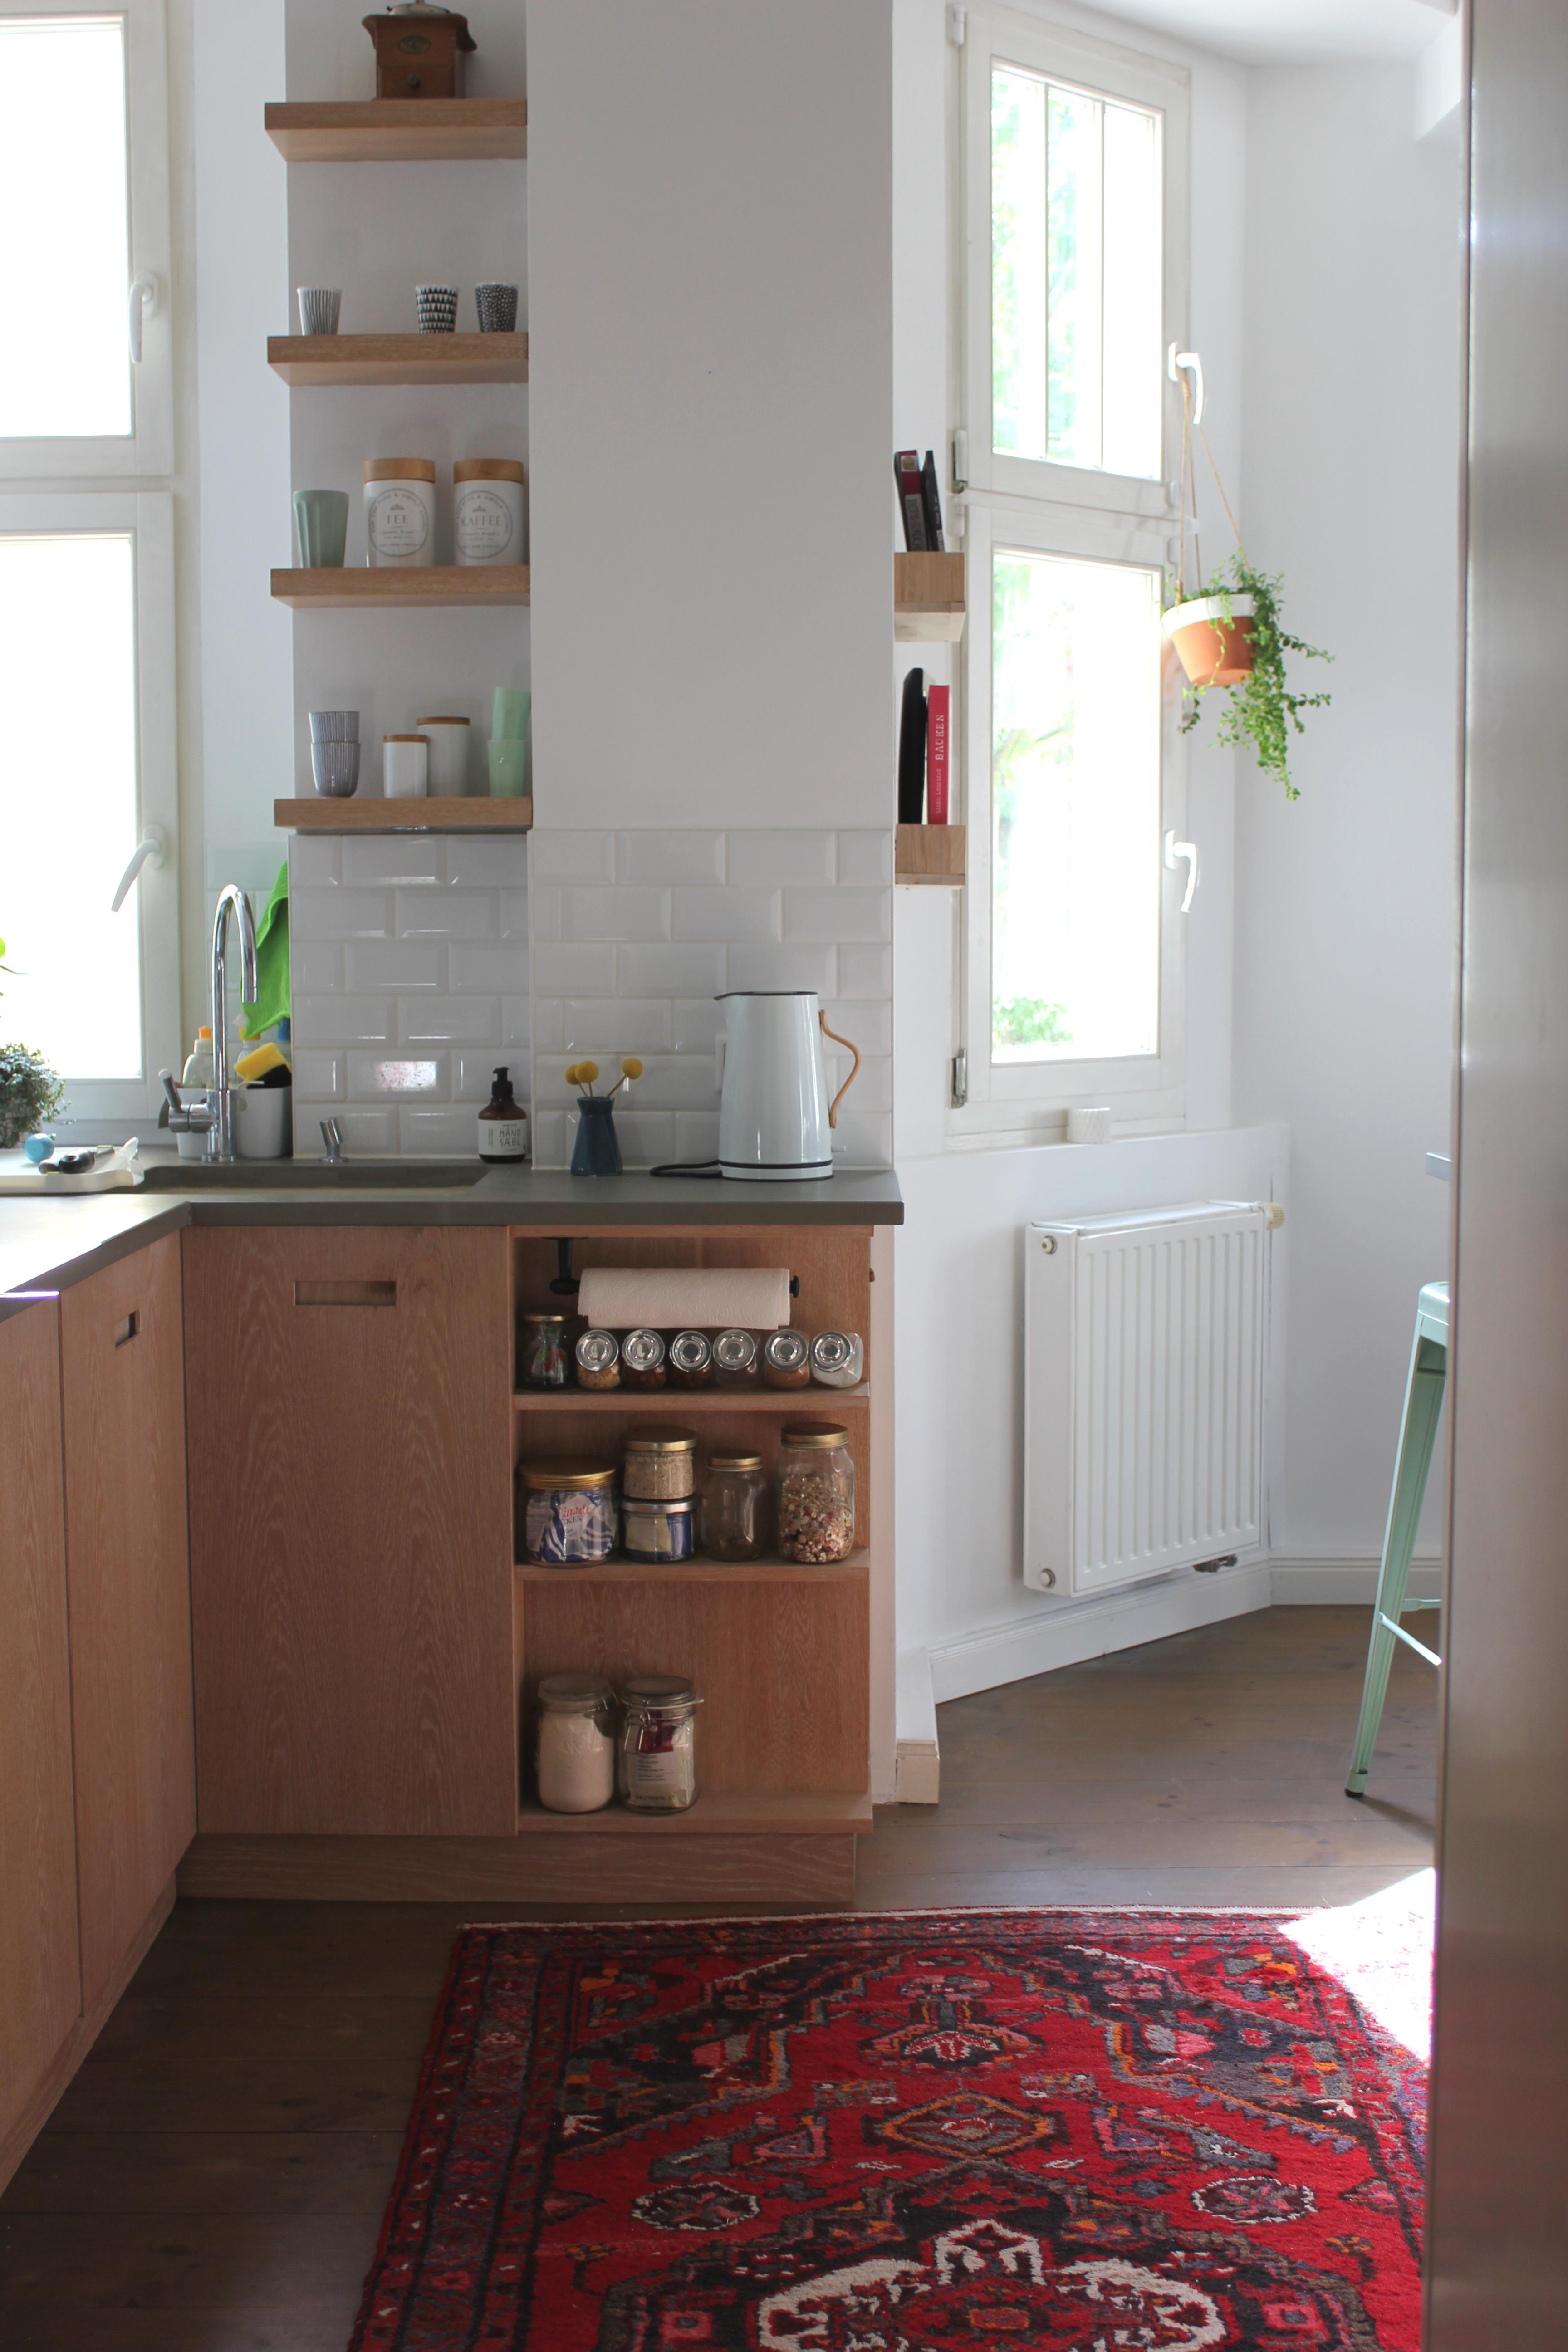 Blick in die Küche - es fehlt noch eine Uhr an der Wand! Irgendwelche Ideen? #Küche #Teppich #Metrofliesen